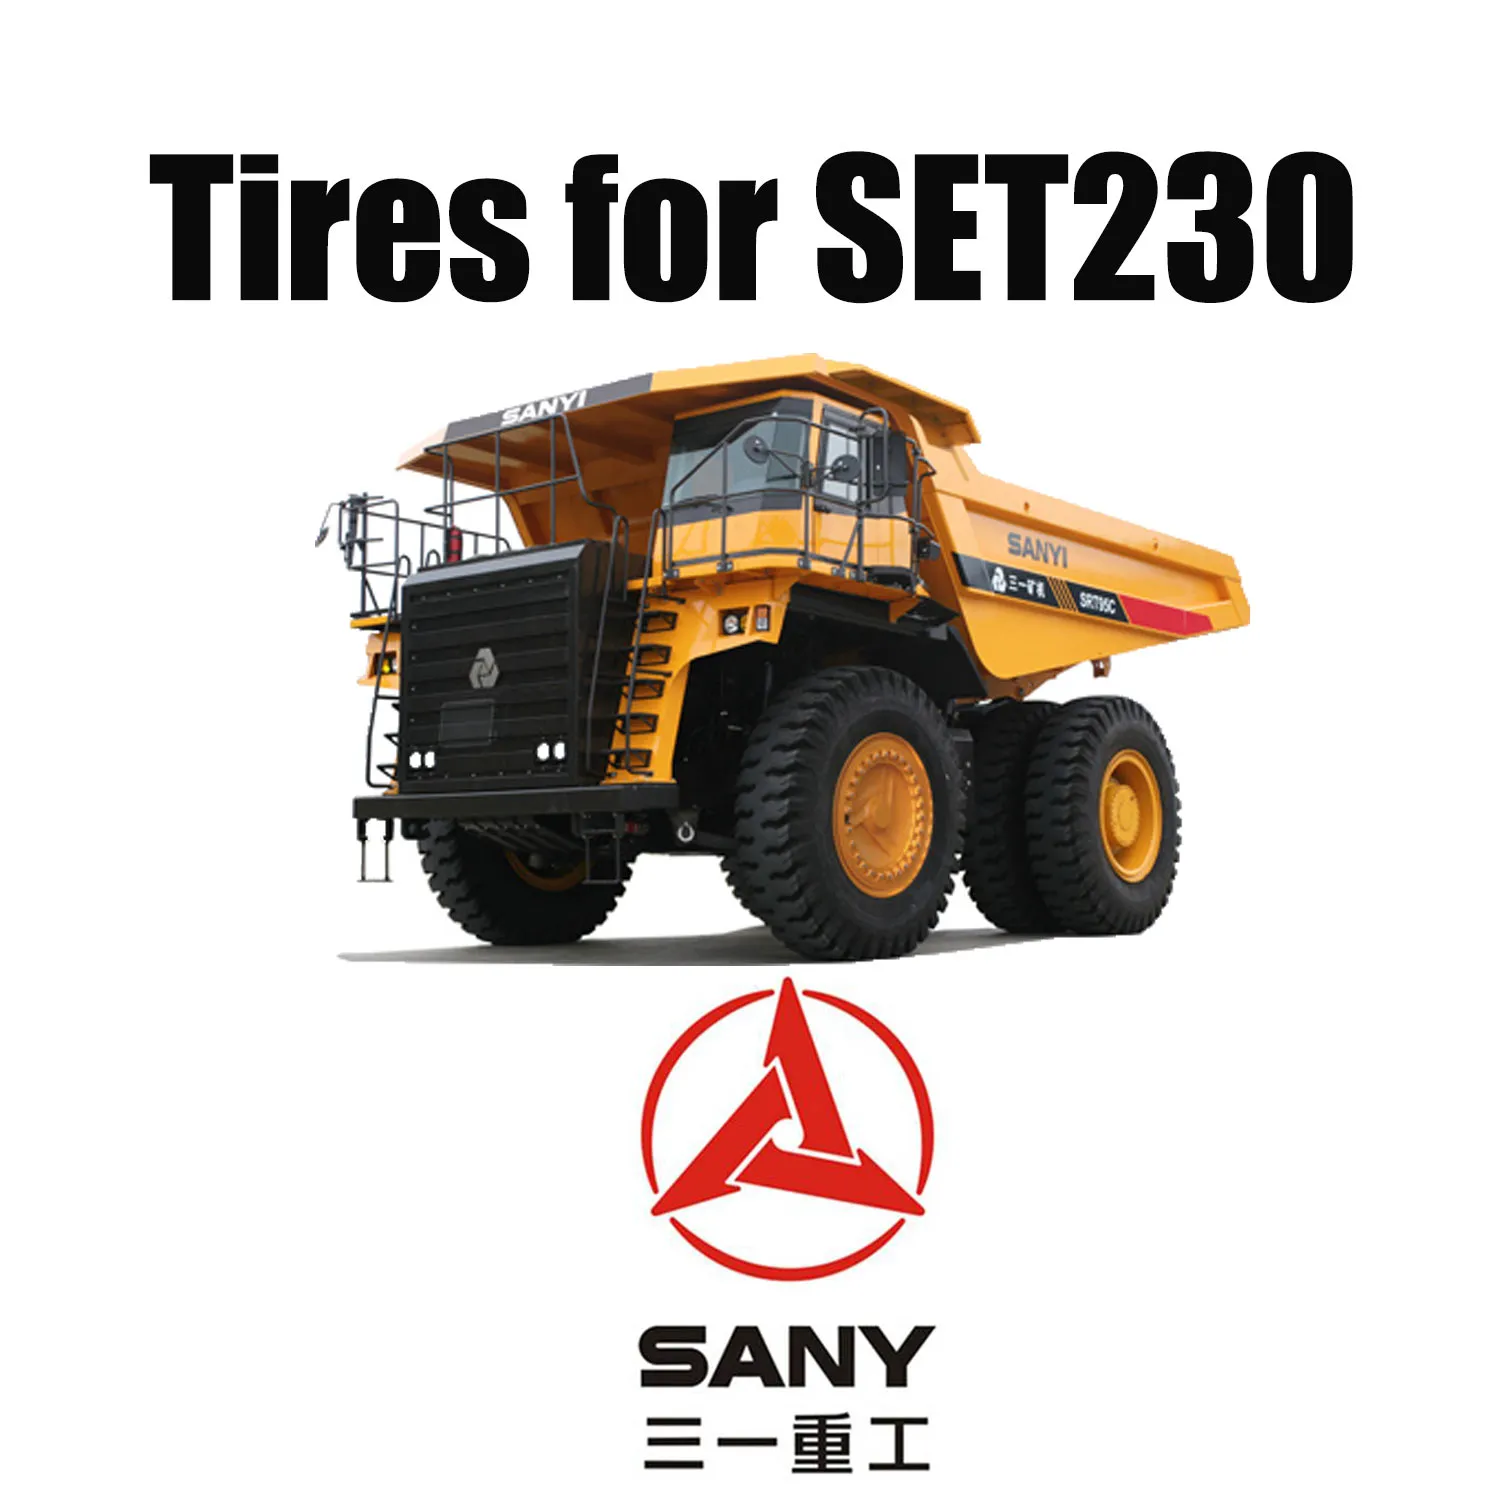 Lốp OTR hướng tâm 40.00R57 với rãnh chống cắt tuyệt vời cho xe tải khai thác SANY SET230